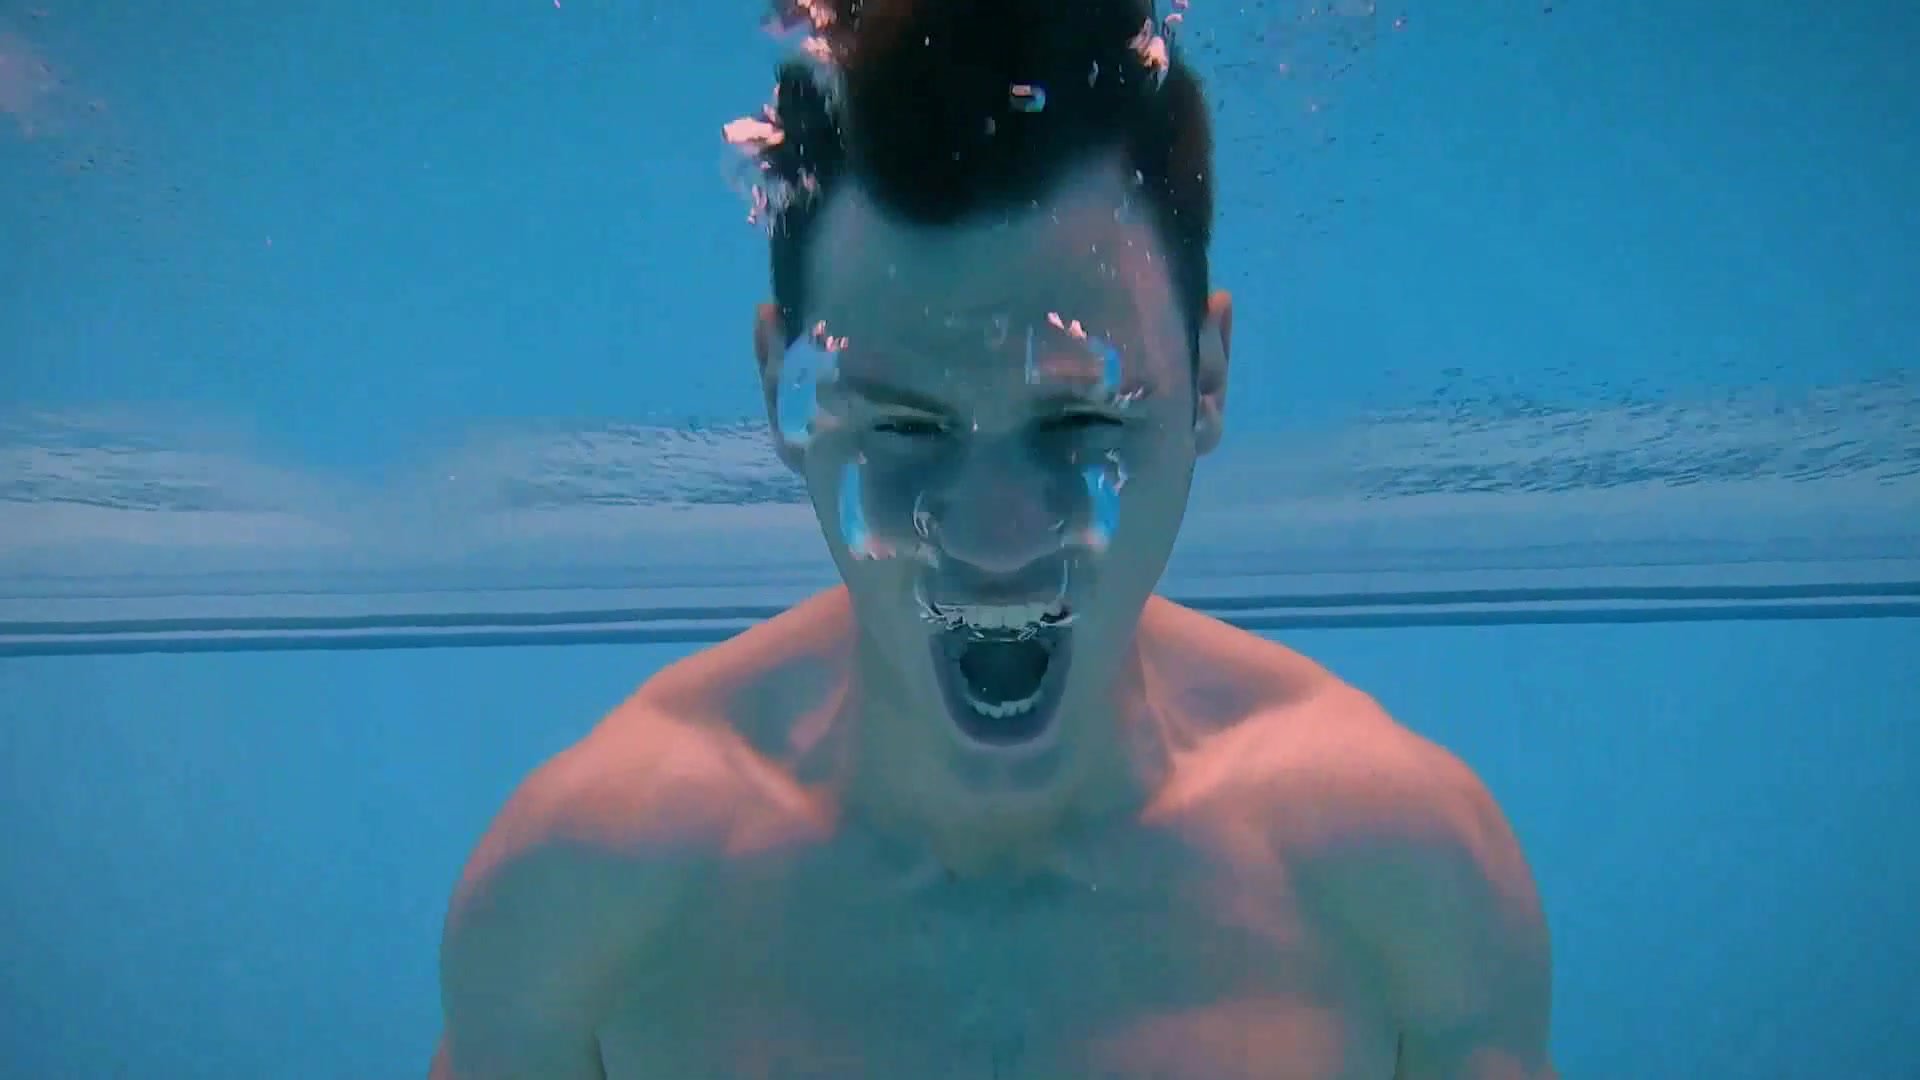 Canadian diver barefaced underwater in speedo